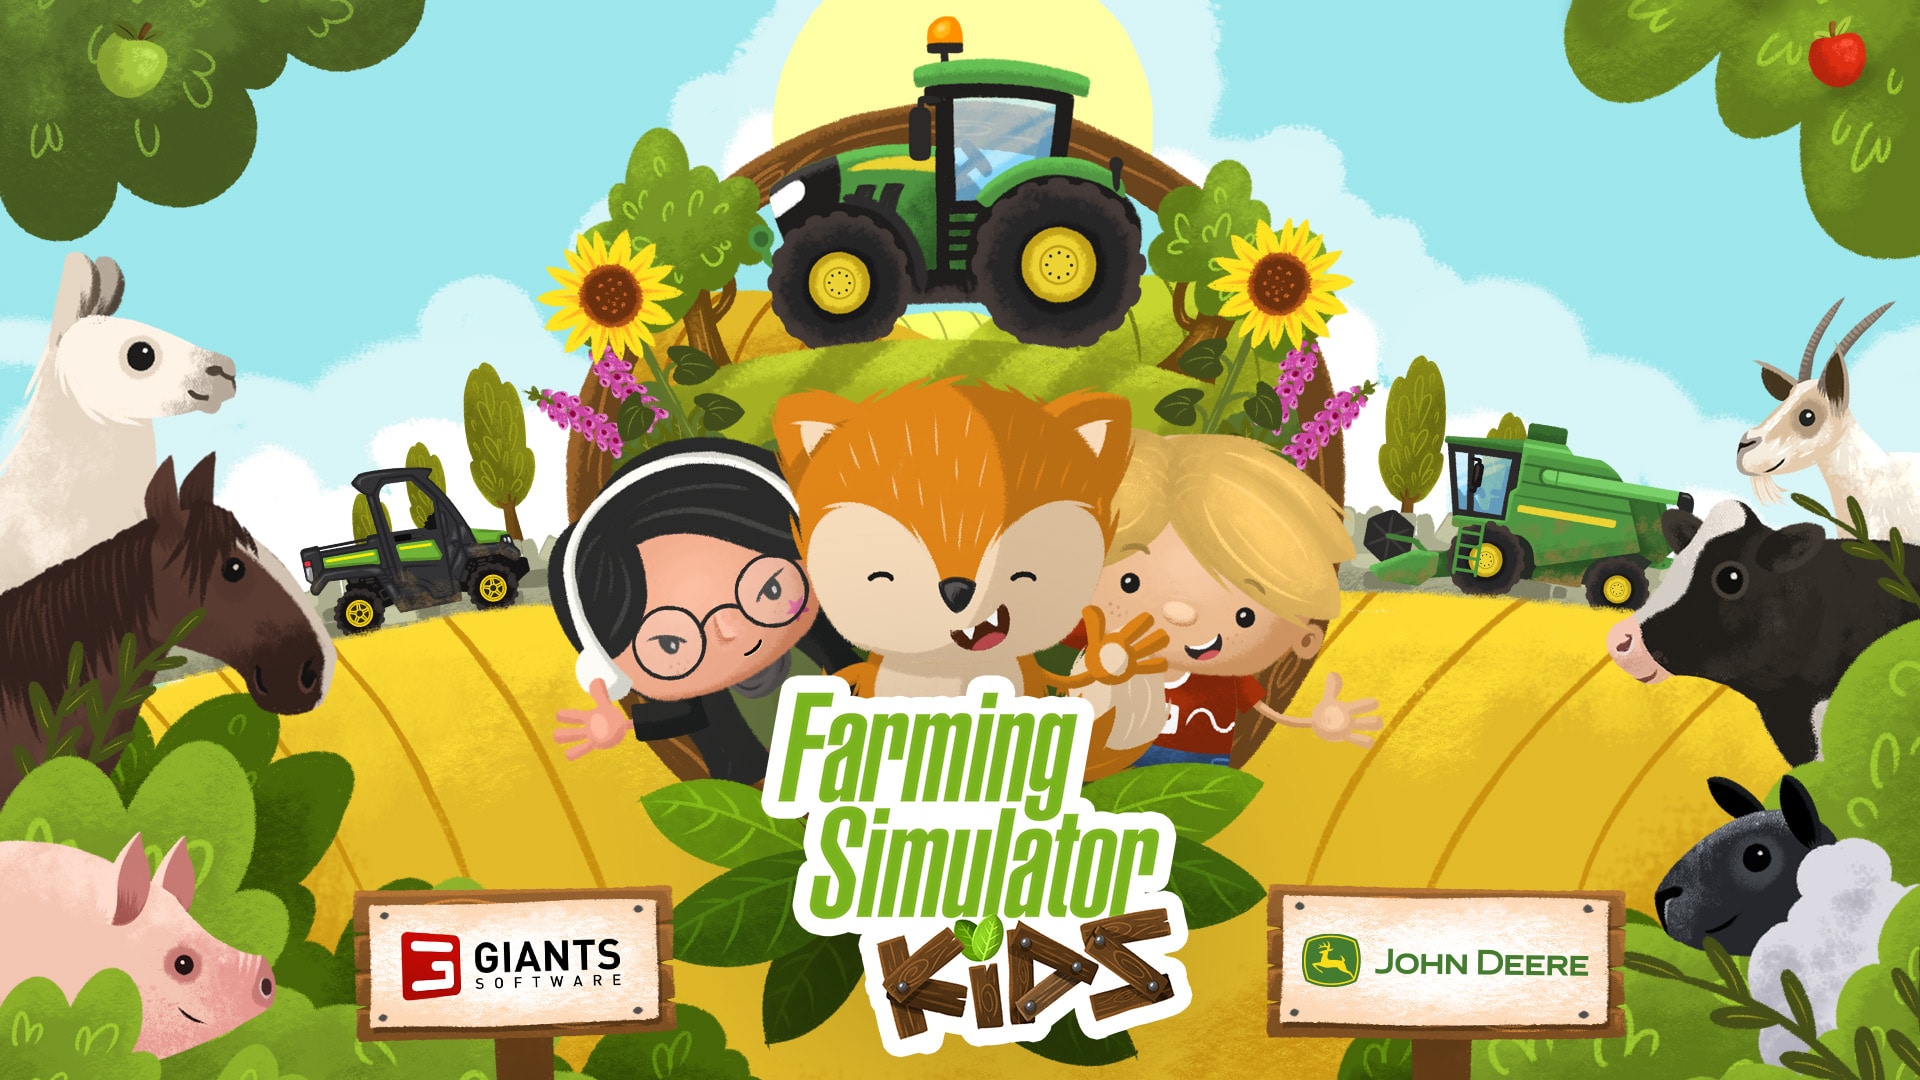 A GIANTS Software e a John Deere apresentam diversão agrícola para as crianças